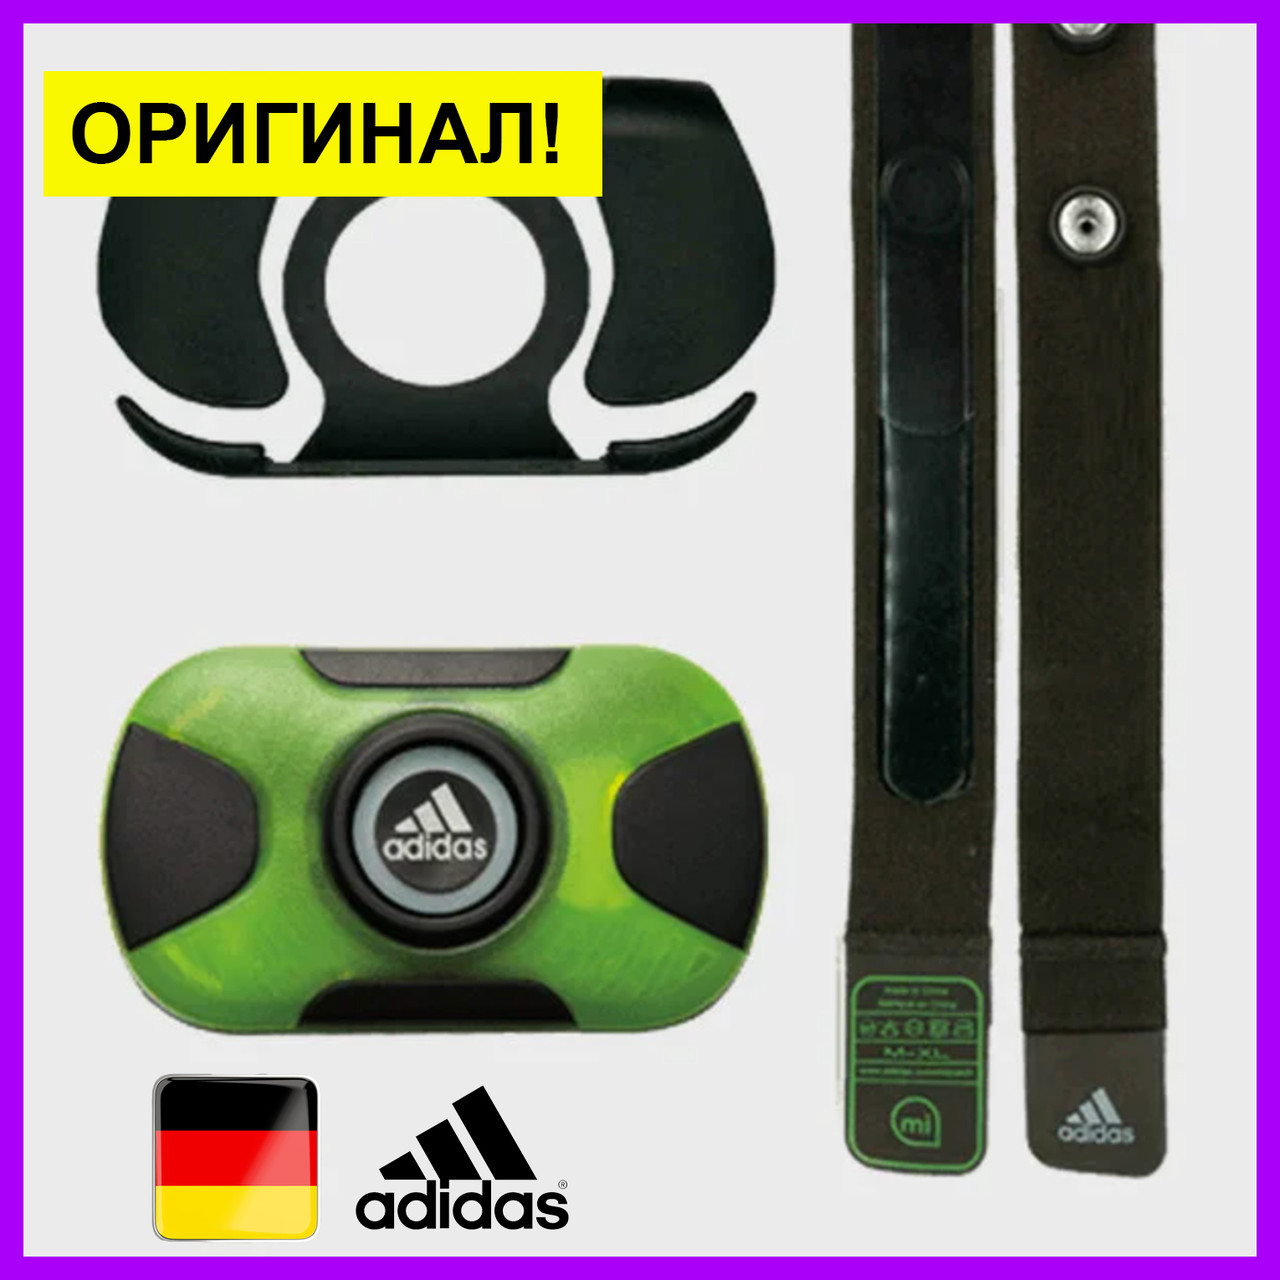 Нагрудный пульсометр Adidas кардиодатчик датчик пульса как garmin sigma  polar, цена 580 грн., купить в Тернополе — Prom.ua (ID#1265371481)